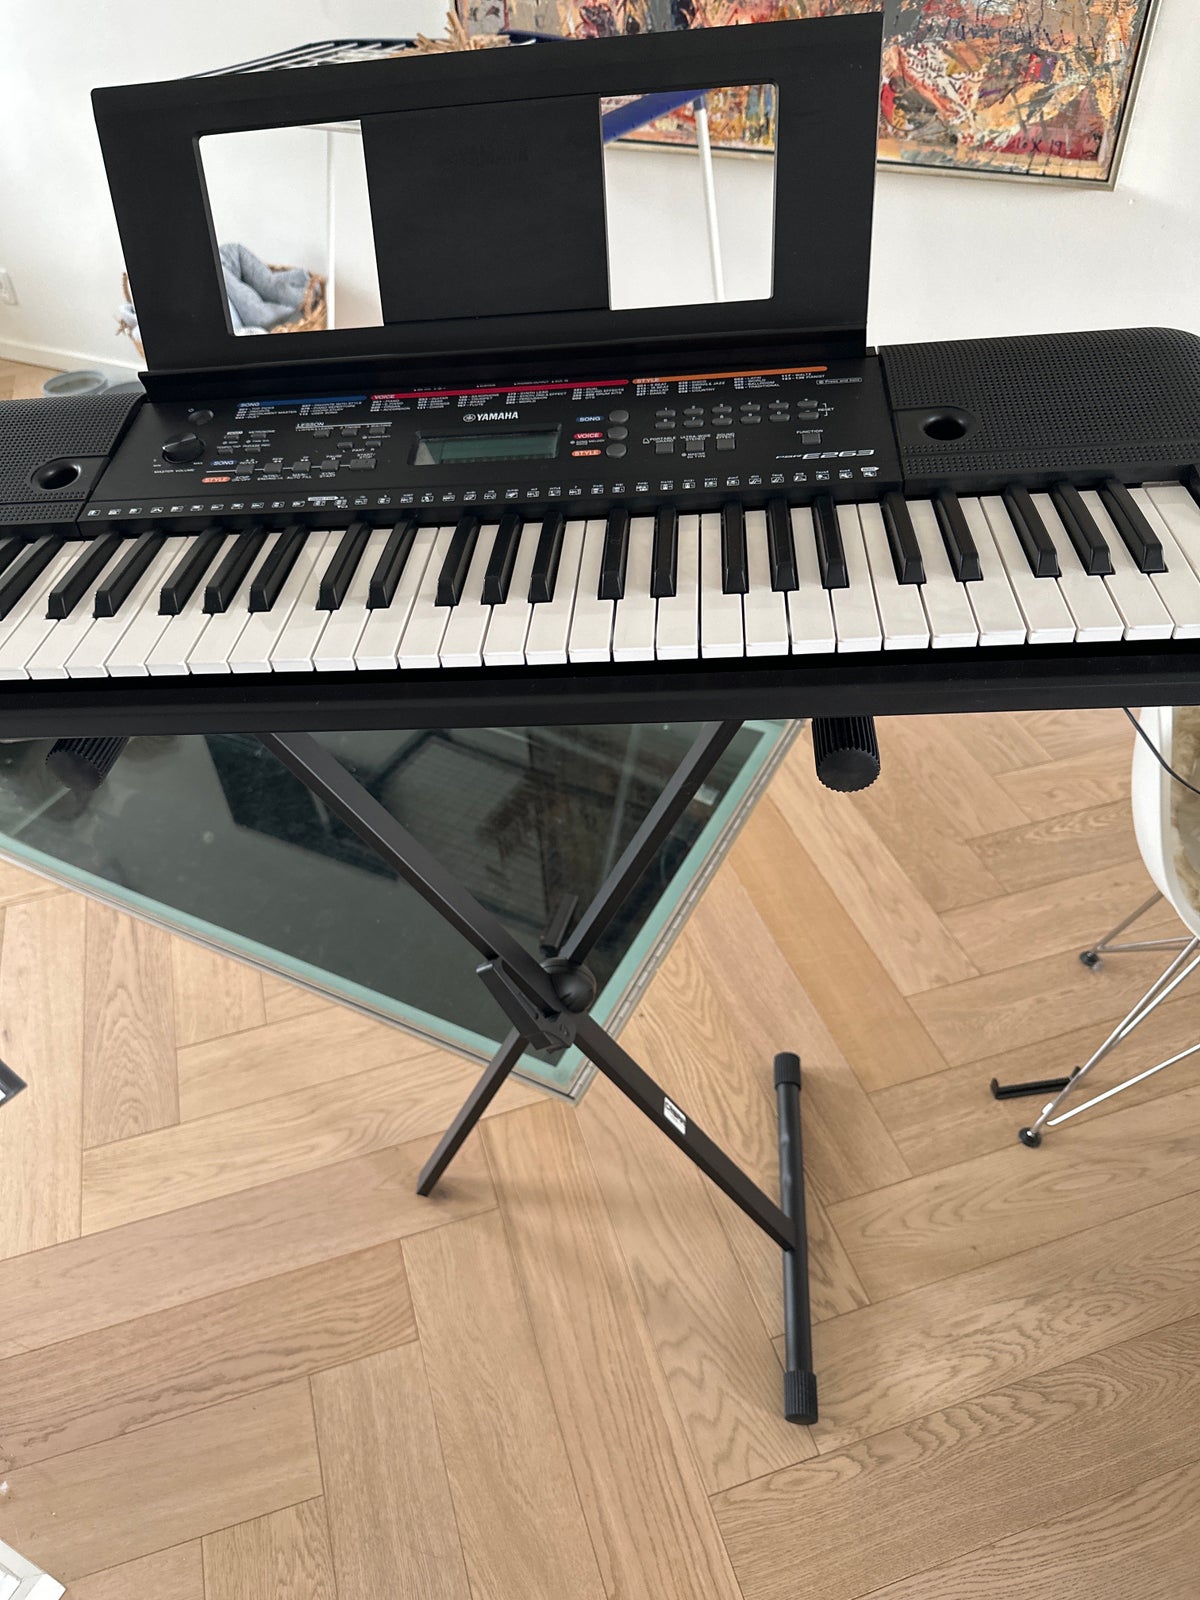 Keyboard, Yamaha PSR E263